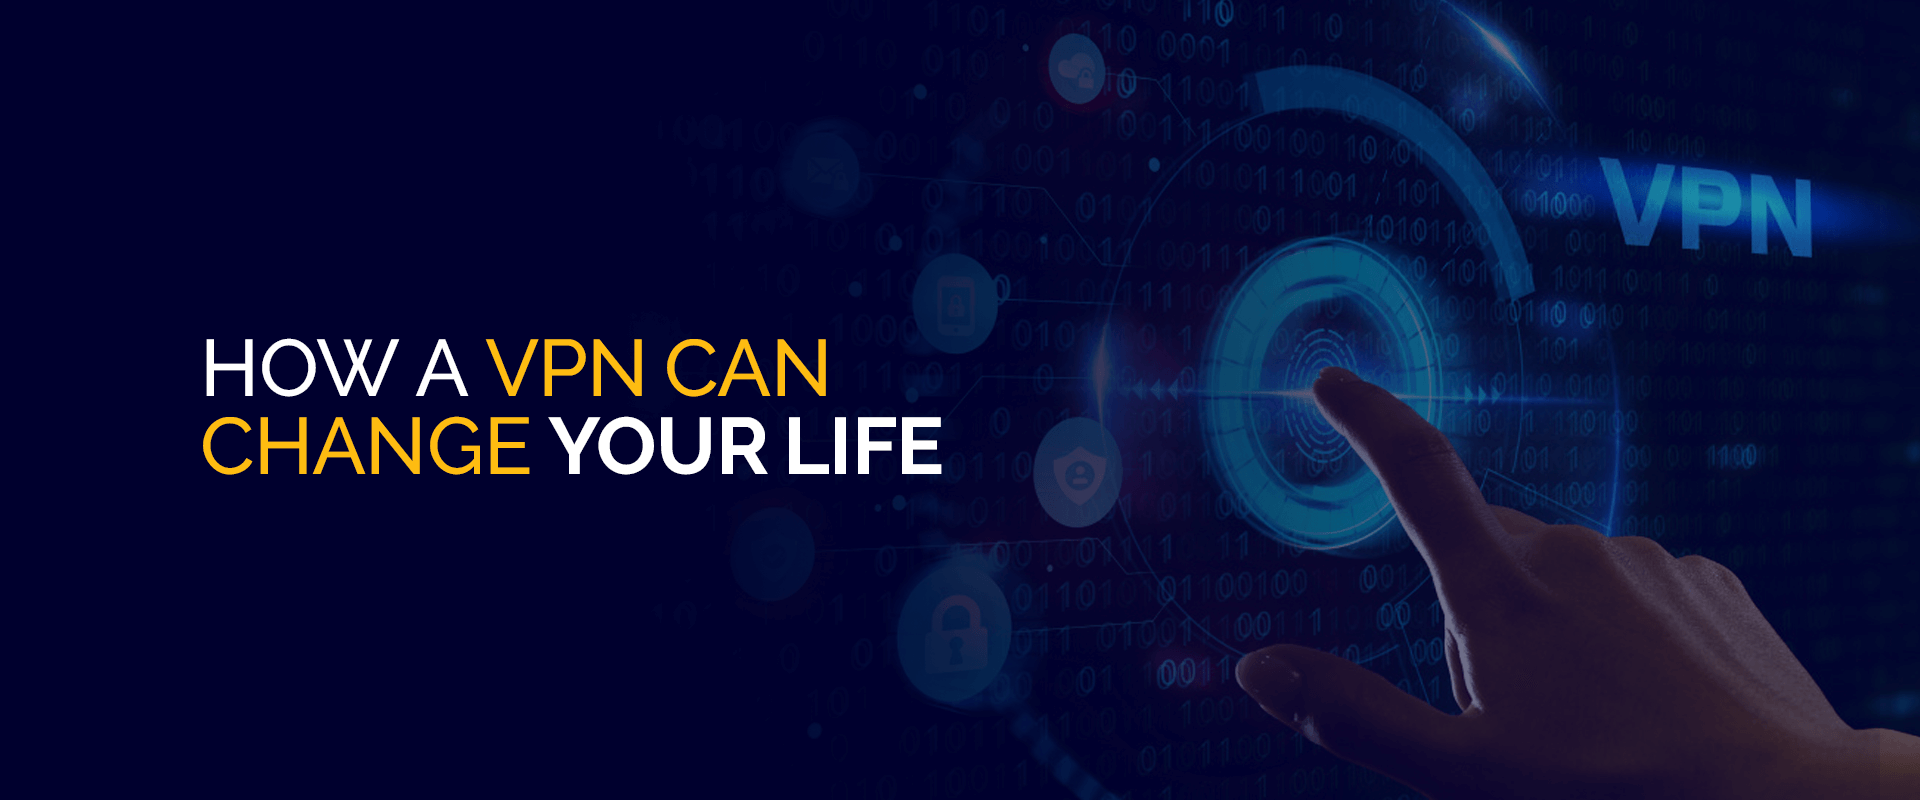 Cómo una VPN puede cambiar tu vida